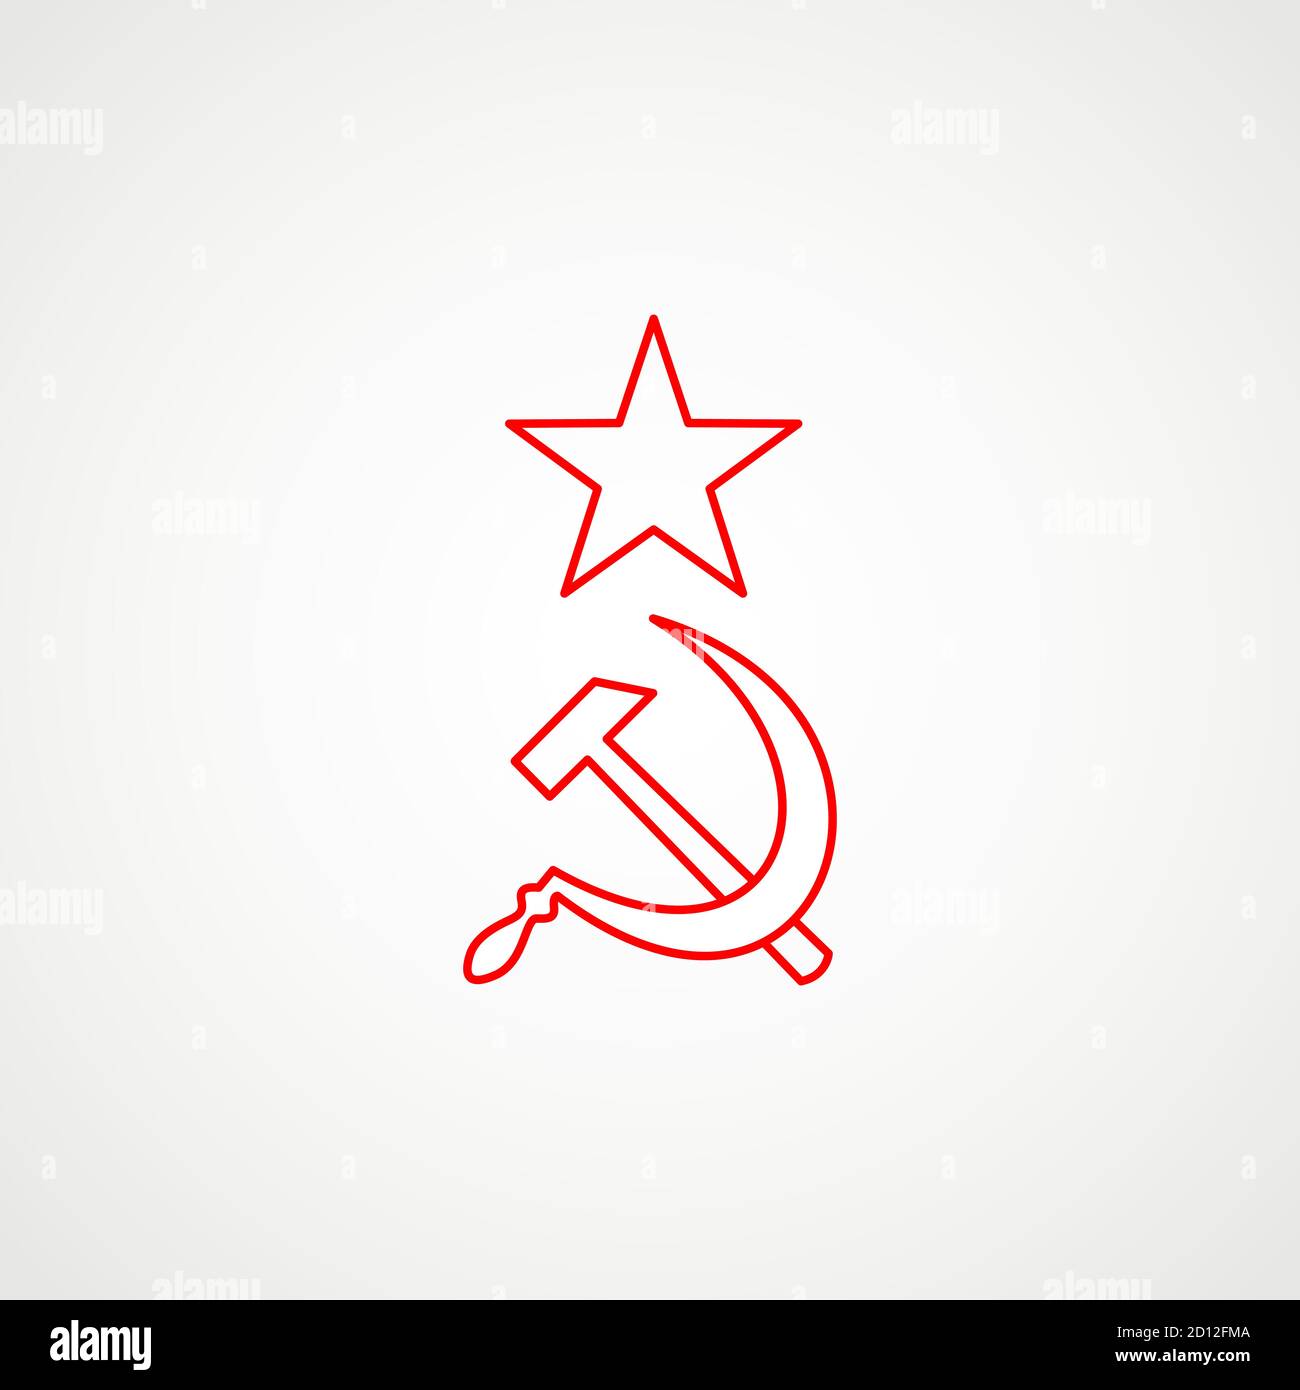 Lineare Ikone des Kommunismus. Hammer, Sichel mit Stern. Rotes sowjetisches Emblem. Minimalistisches Wappen der UdSSR. Vektor Stock Vektor